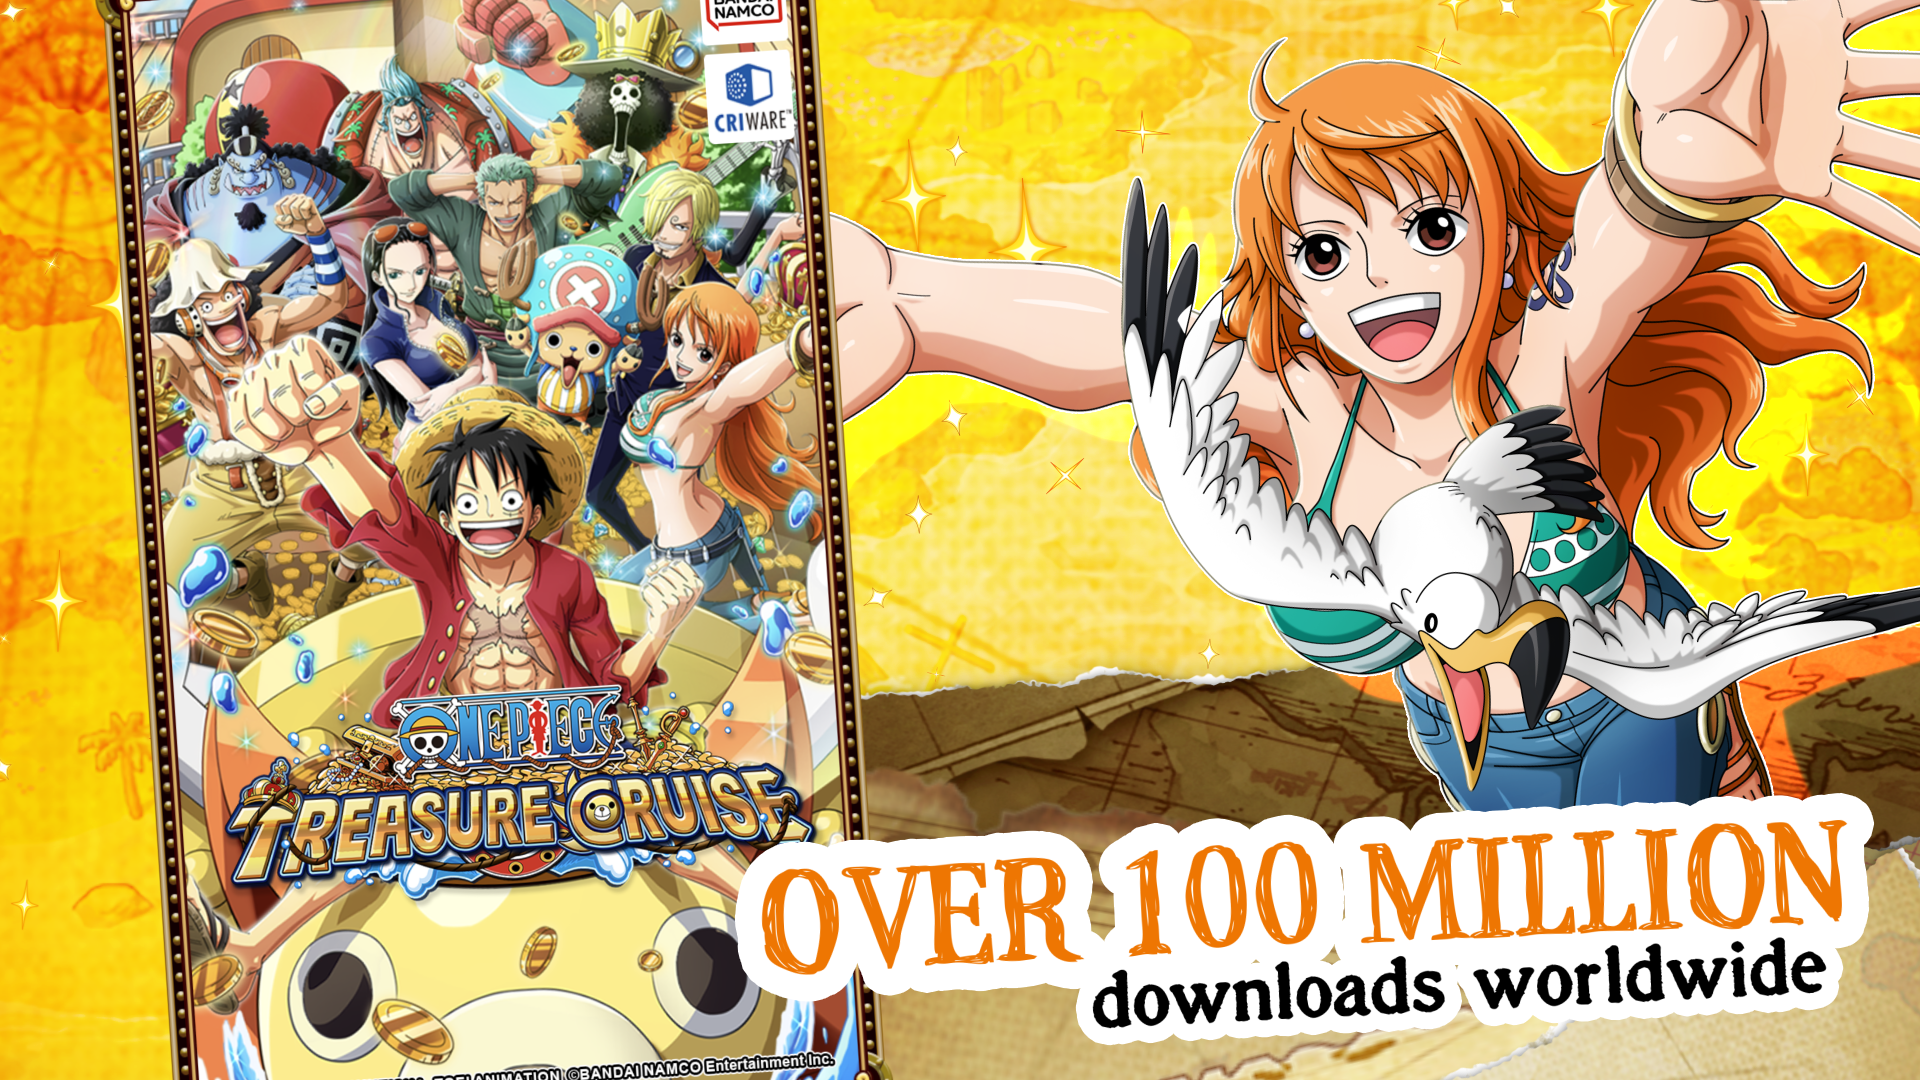 Bandai Namco lança RPG do mangá One Piece para Android e iOS 